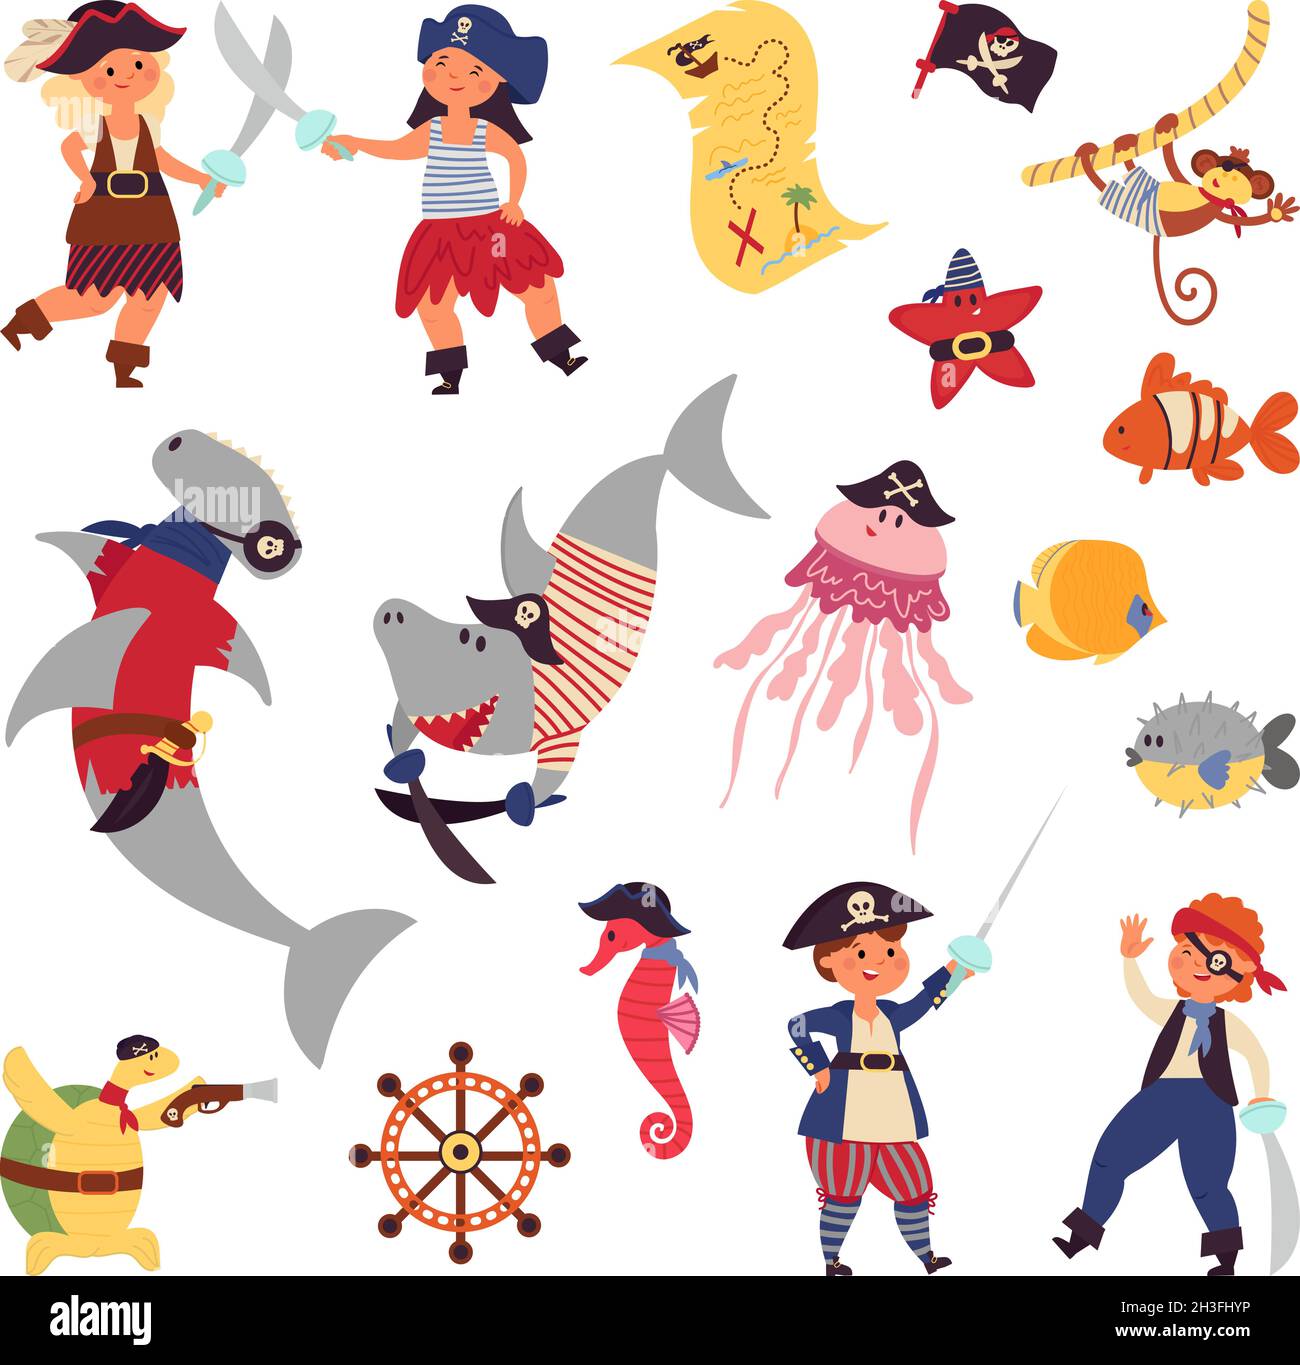 Pirates life. Sea wildlife, ocean plants cartoon shark fish. Children costumes, underwater world marine adventures decent vector characters Stock Vector